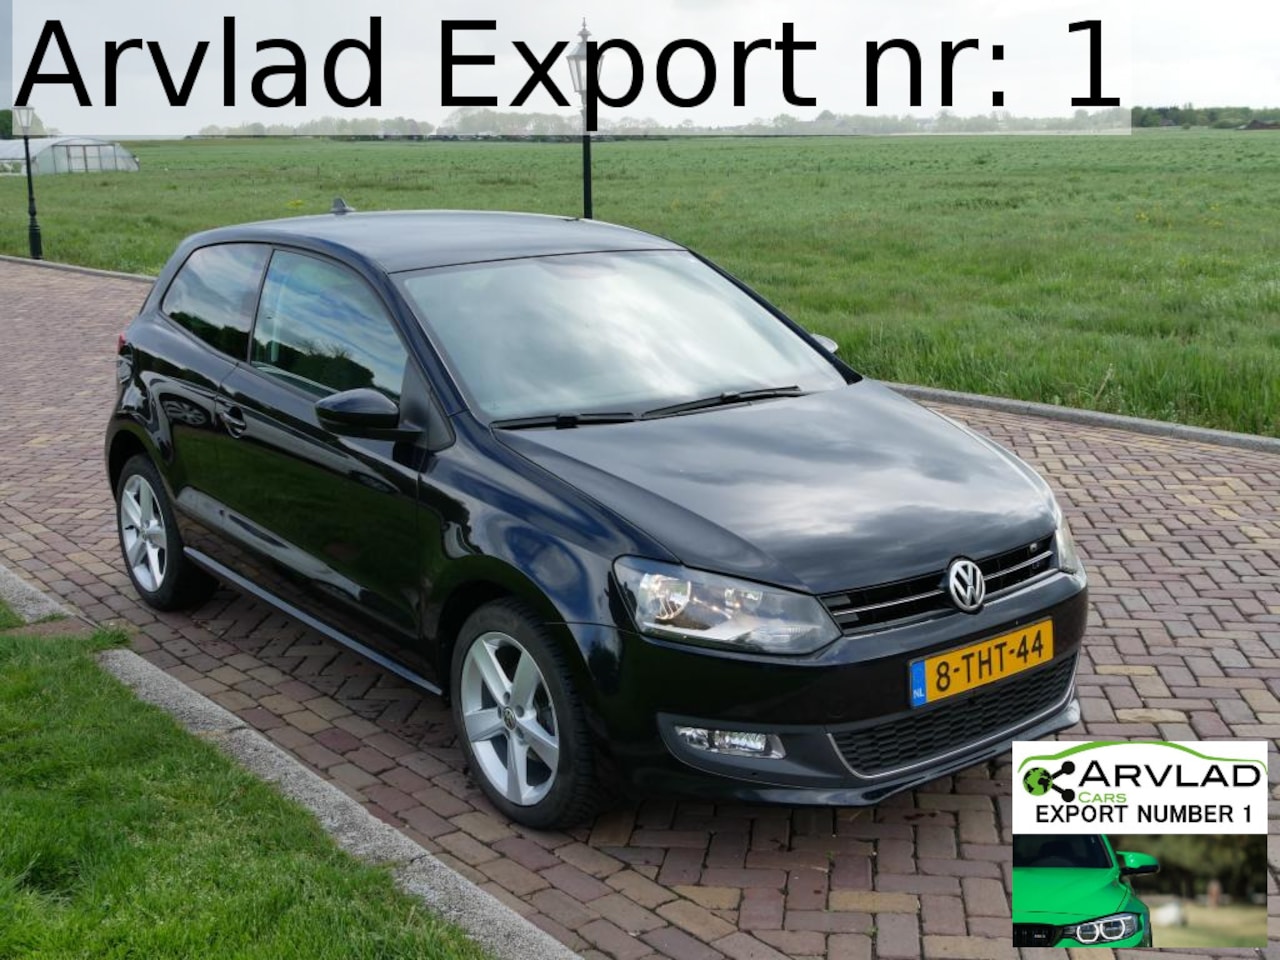 Oceaan binnen Appal Volkswagen Polo NETTO 5999 NETTO*AUT* 1.6 TDI 90 PK NAV AUTOMAAT 2014 2014  Diesel - Occasion te koop op AutoWereld.nl